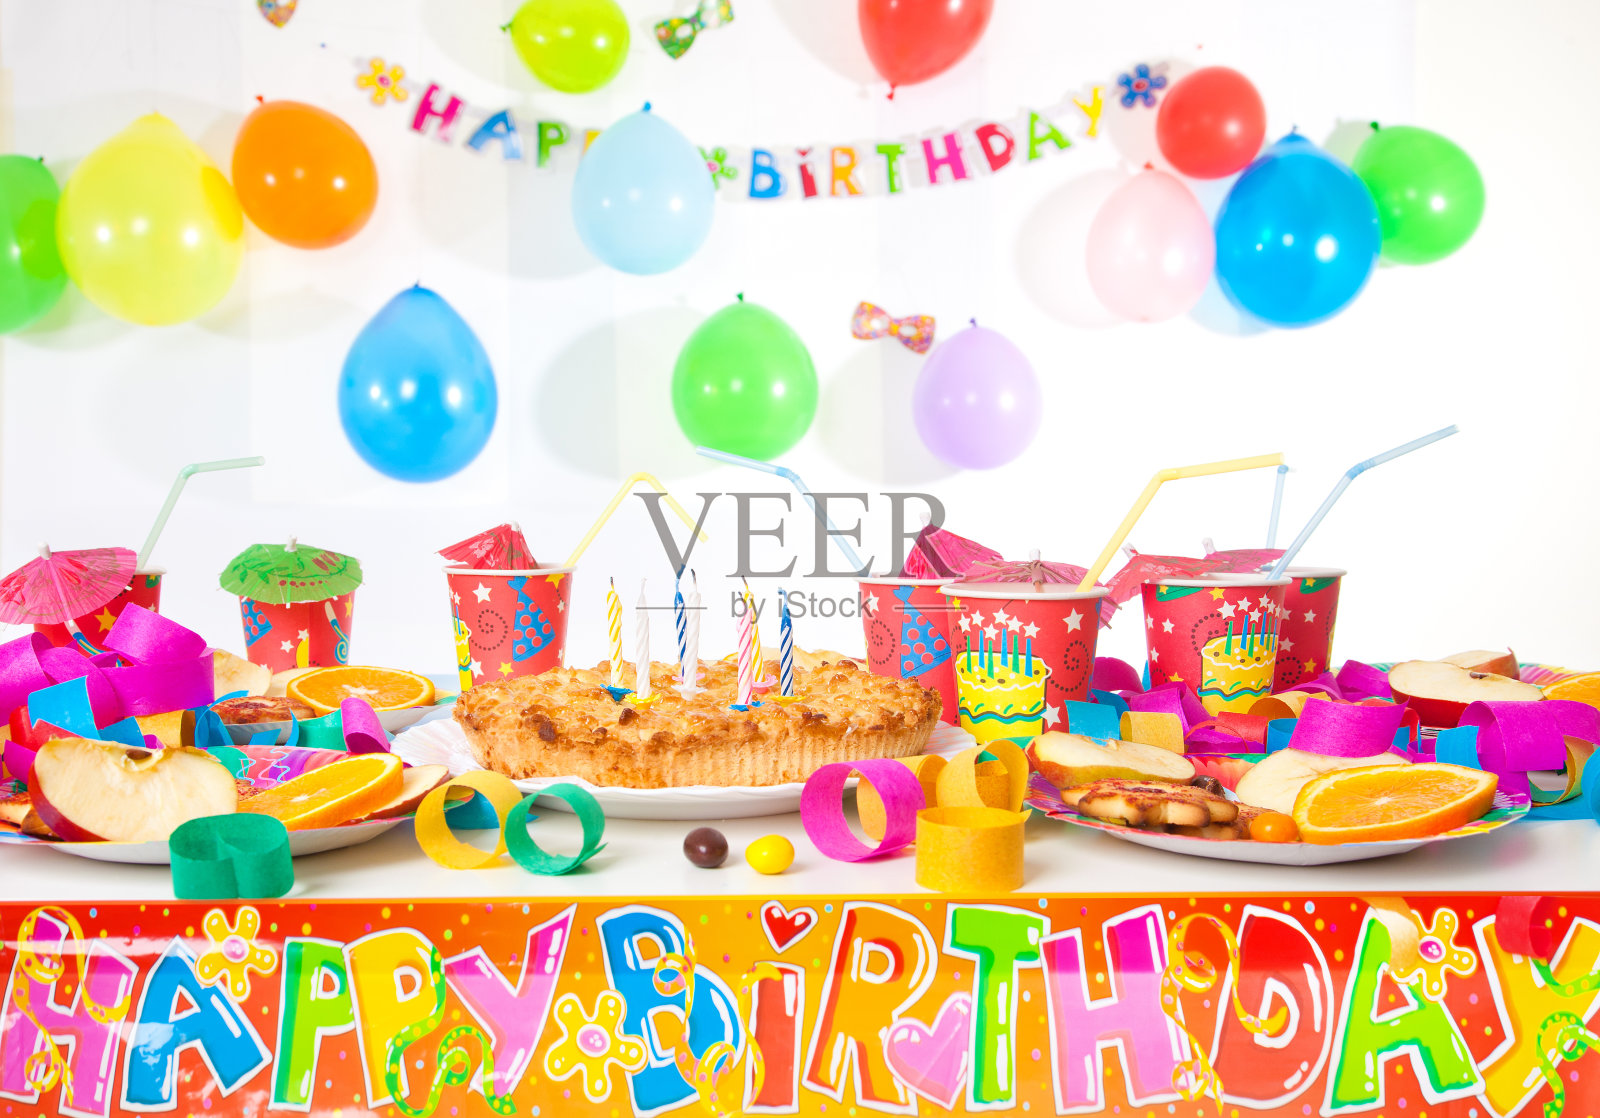 有盘子、杯子、装饰品和蛋糕的生日桌子照片摄影图片